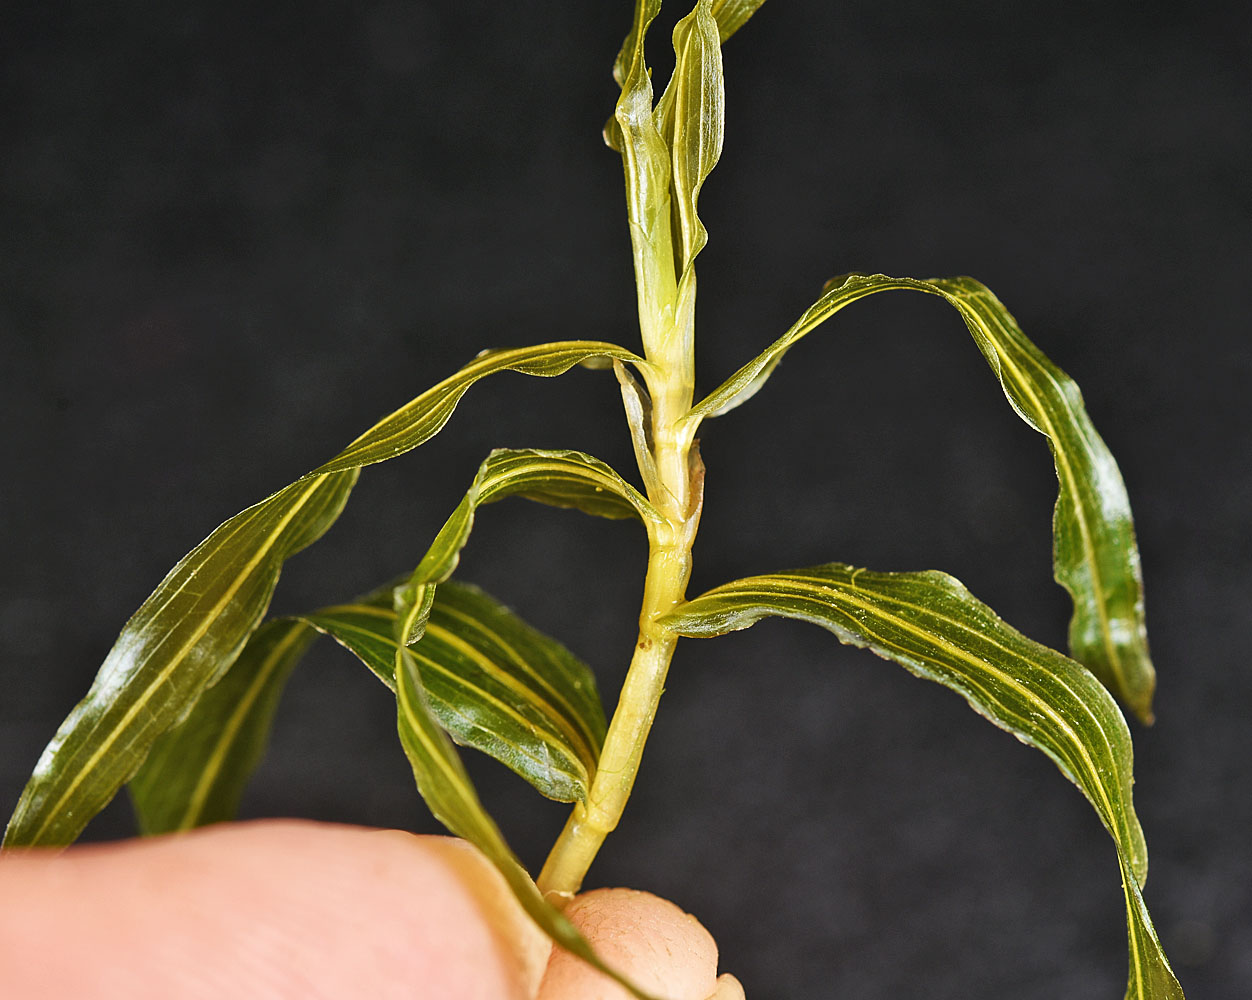 Flora of Eastern Washington Image: Potamogeton richardsonii